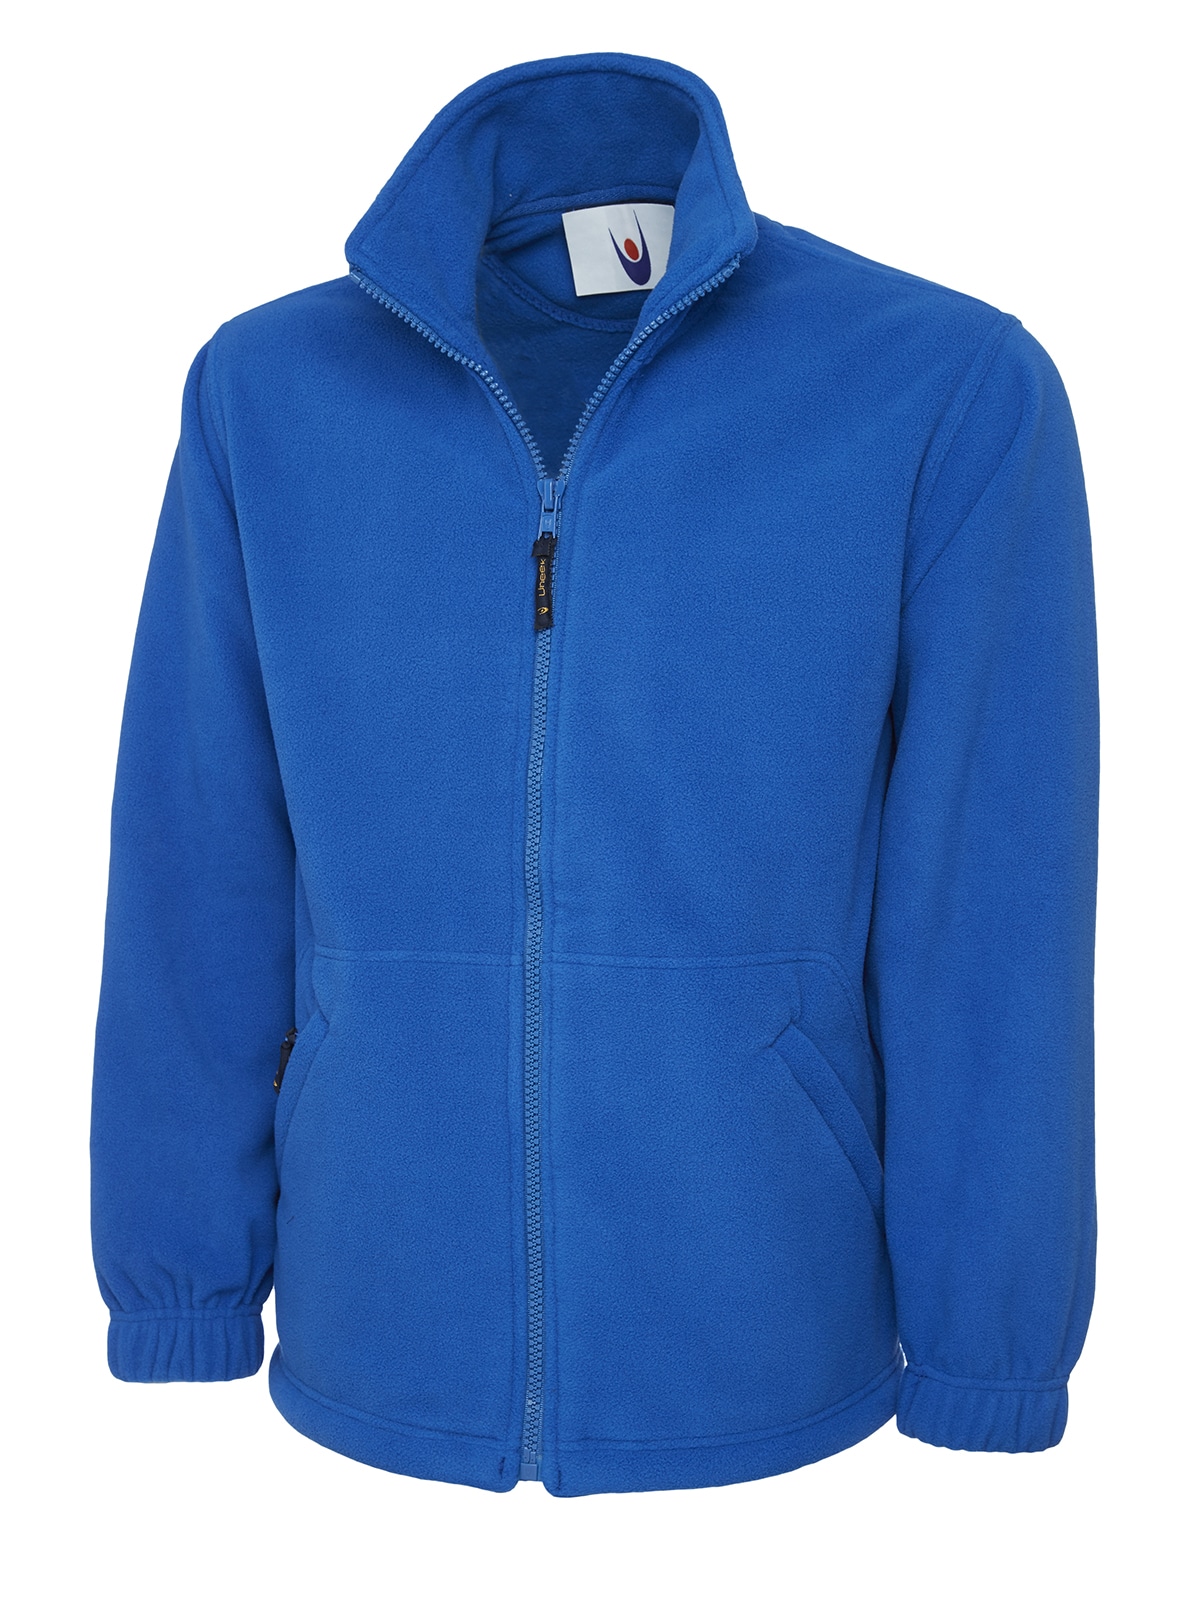 Uneek Classic Full Zip Fleece Jacket – Unisex Fit